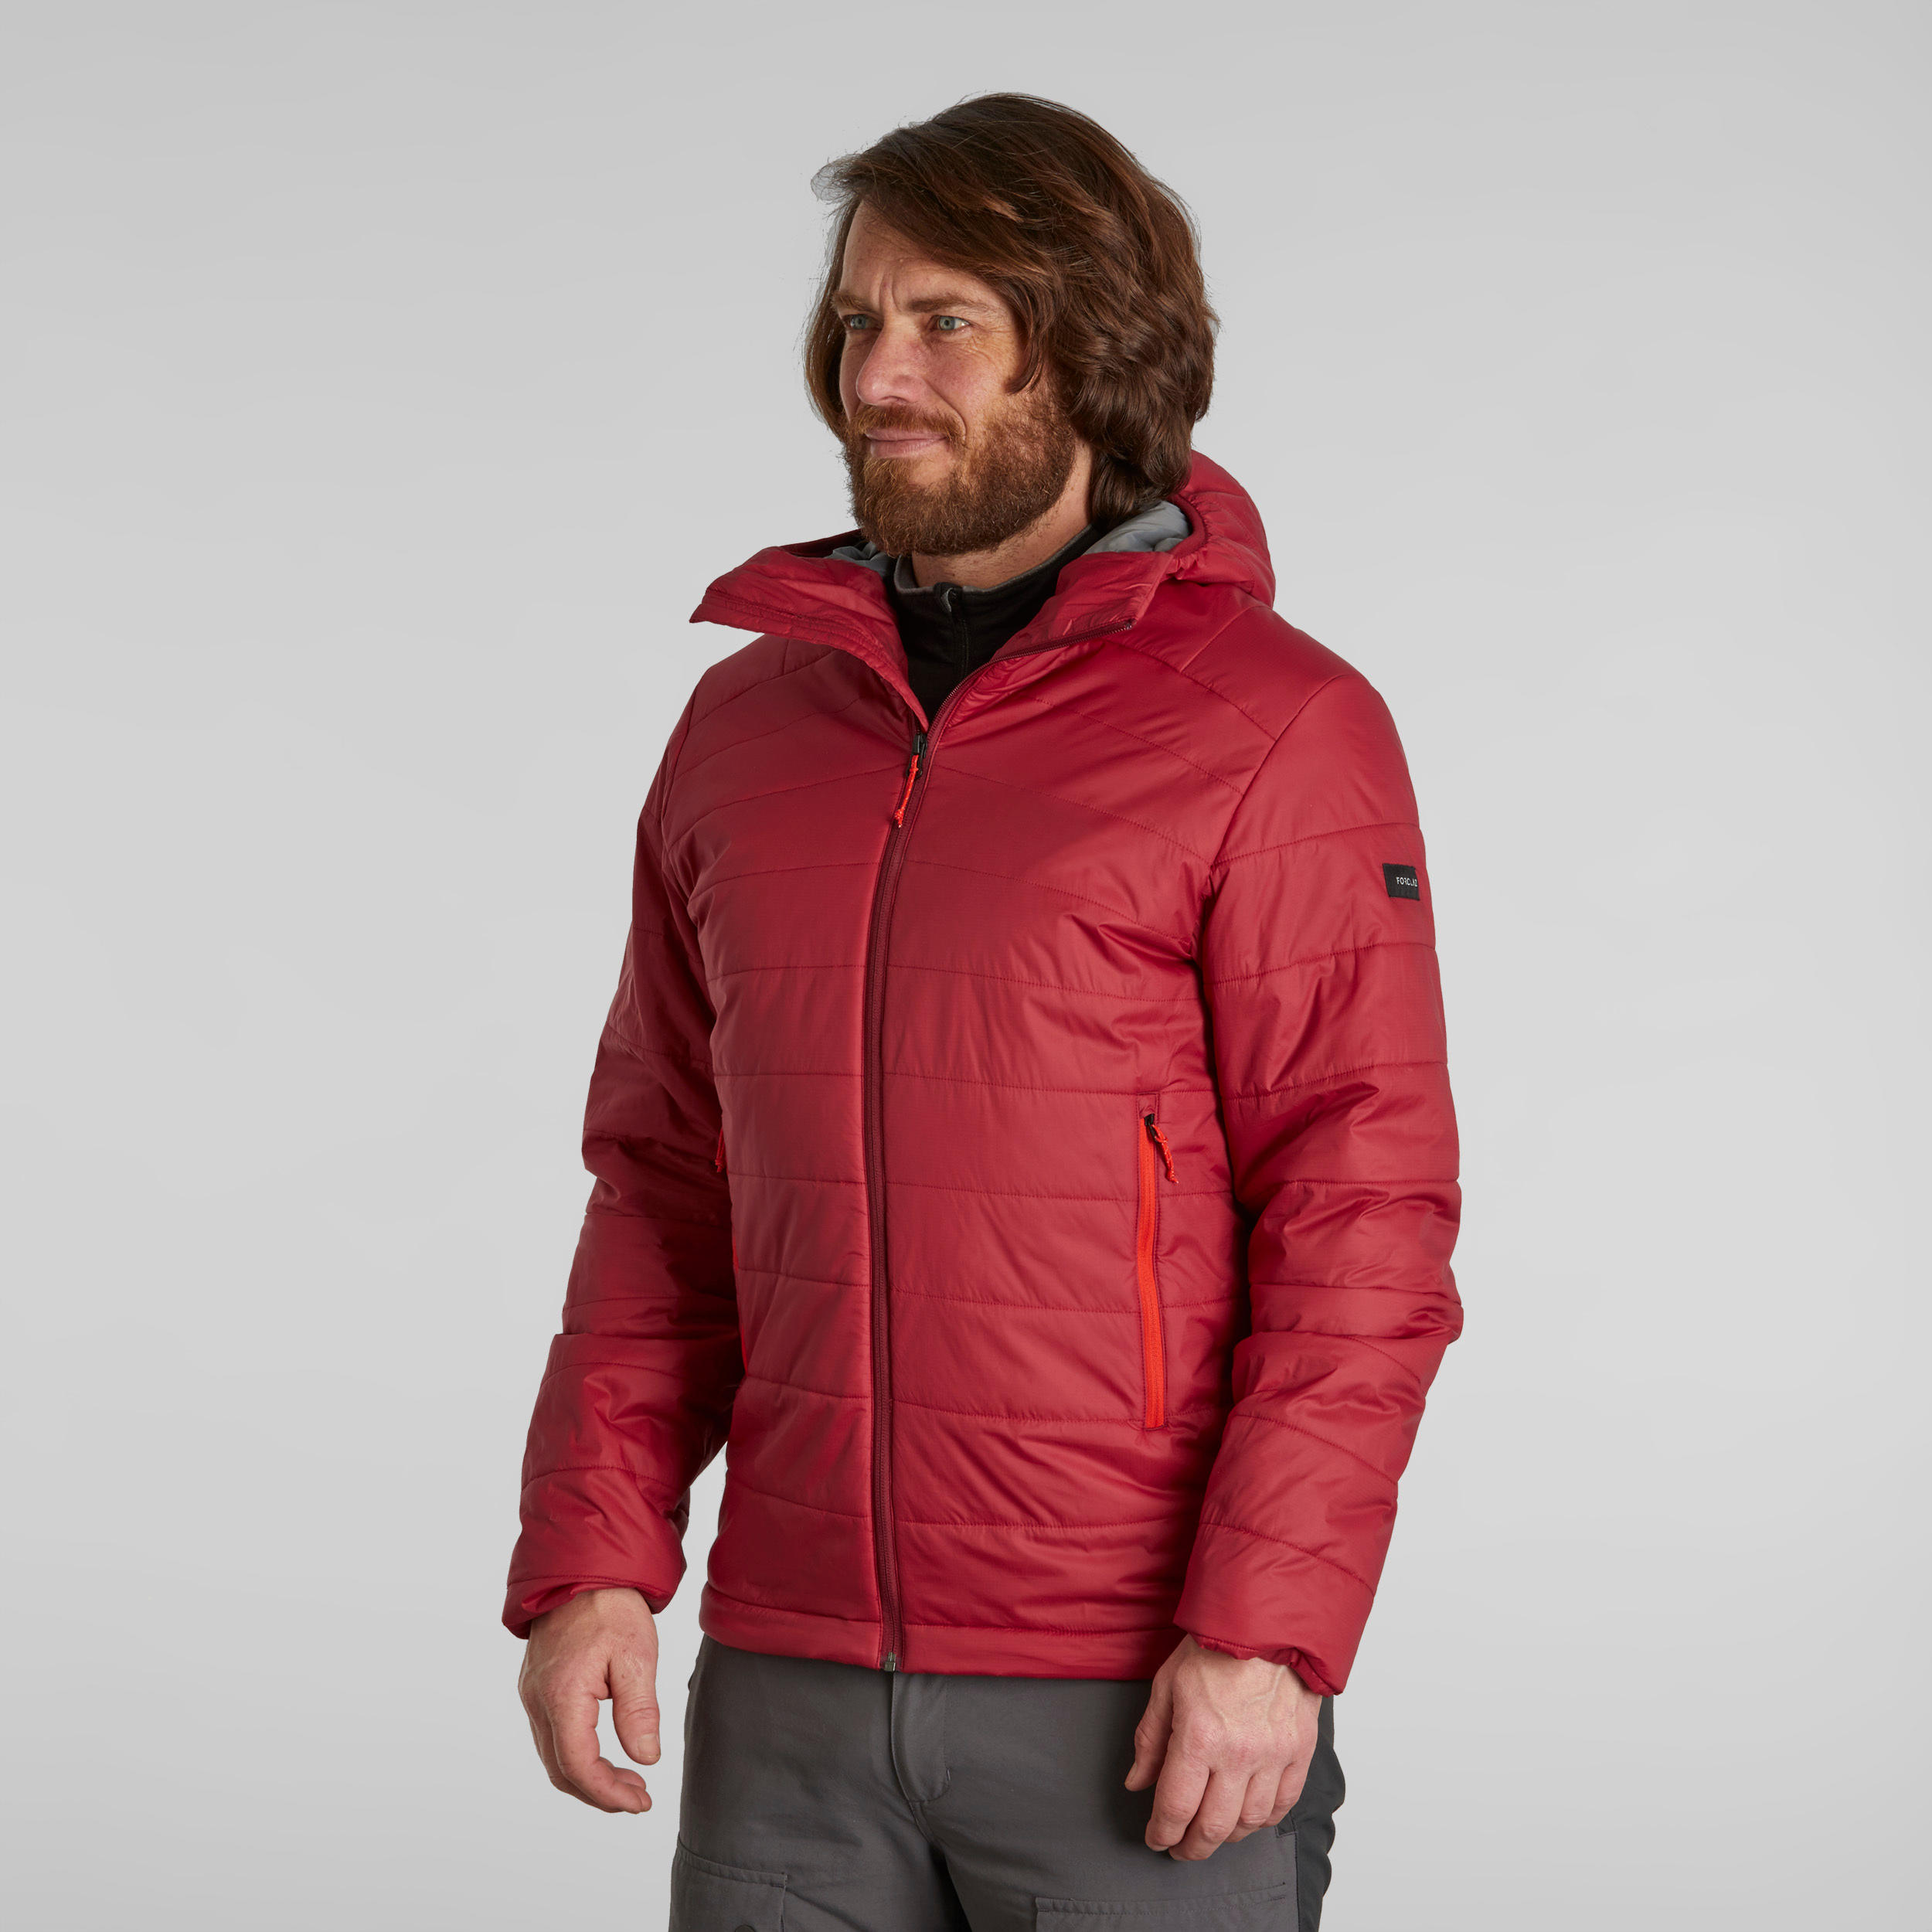 Trek 100 : The Padded Jacket for Winter